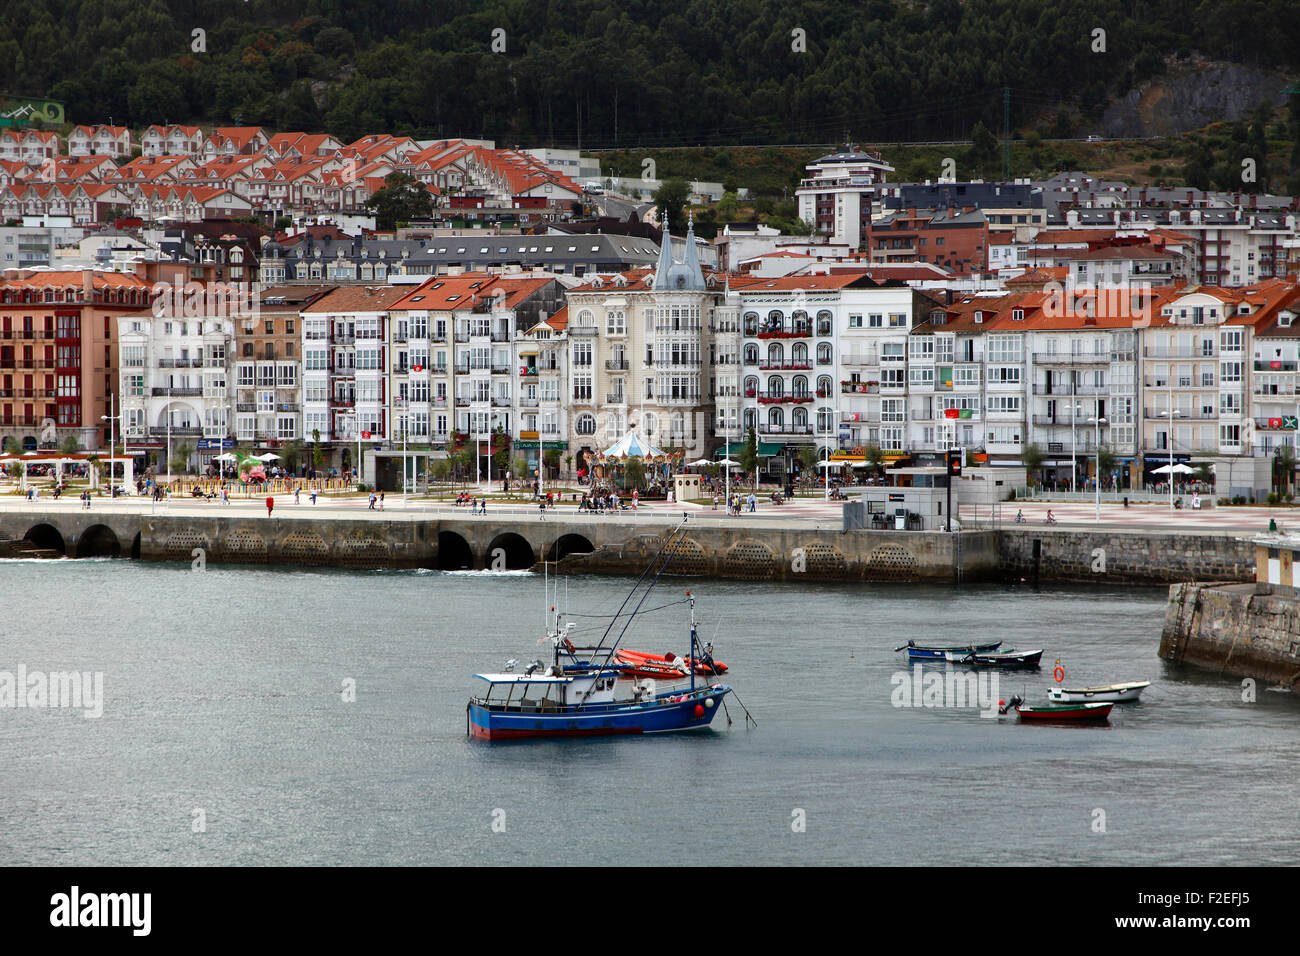 Vue panoramique de la ville de Castro Urdiales, Santander, Cantabria, Espagne. Banque D'Images